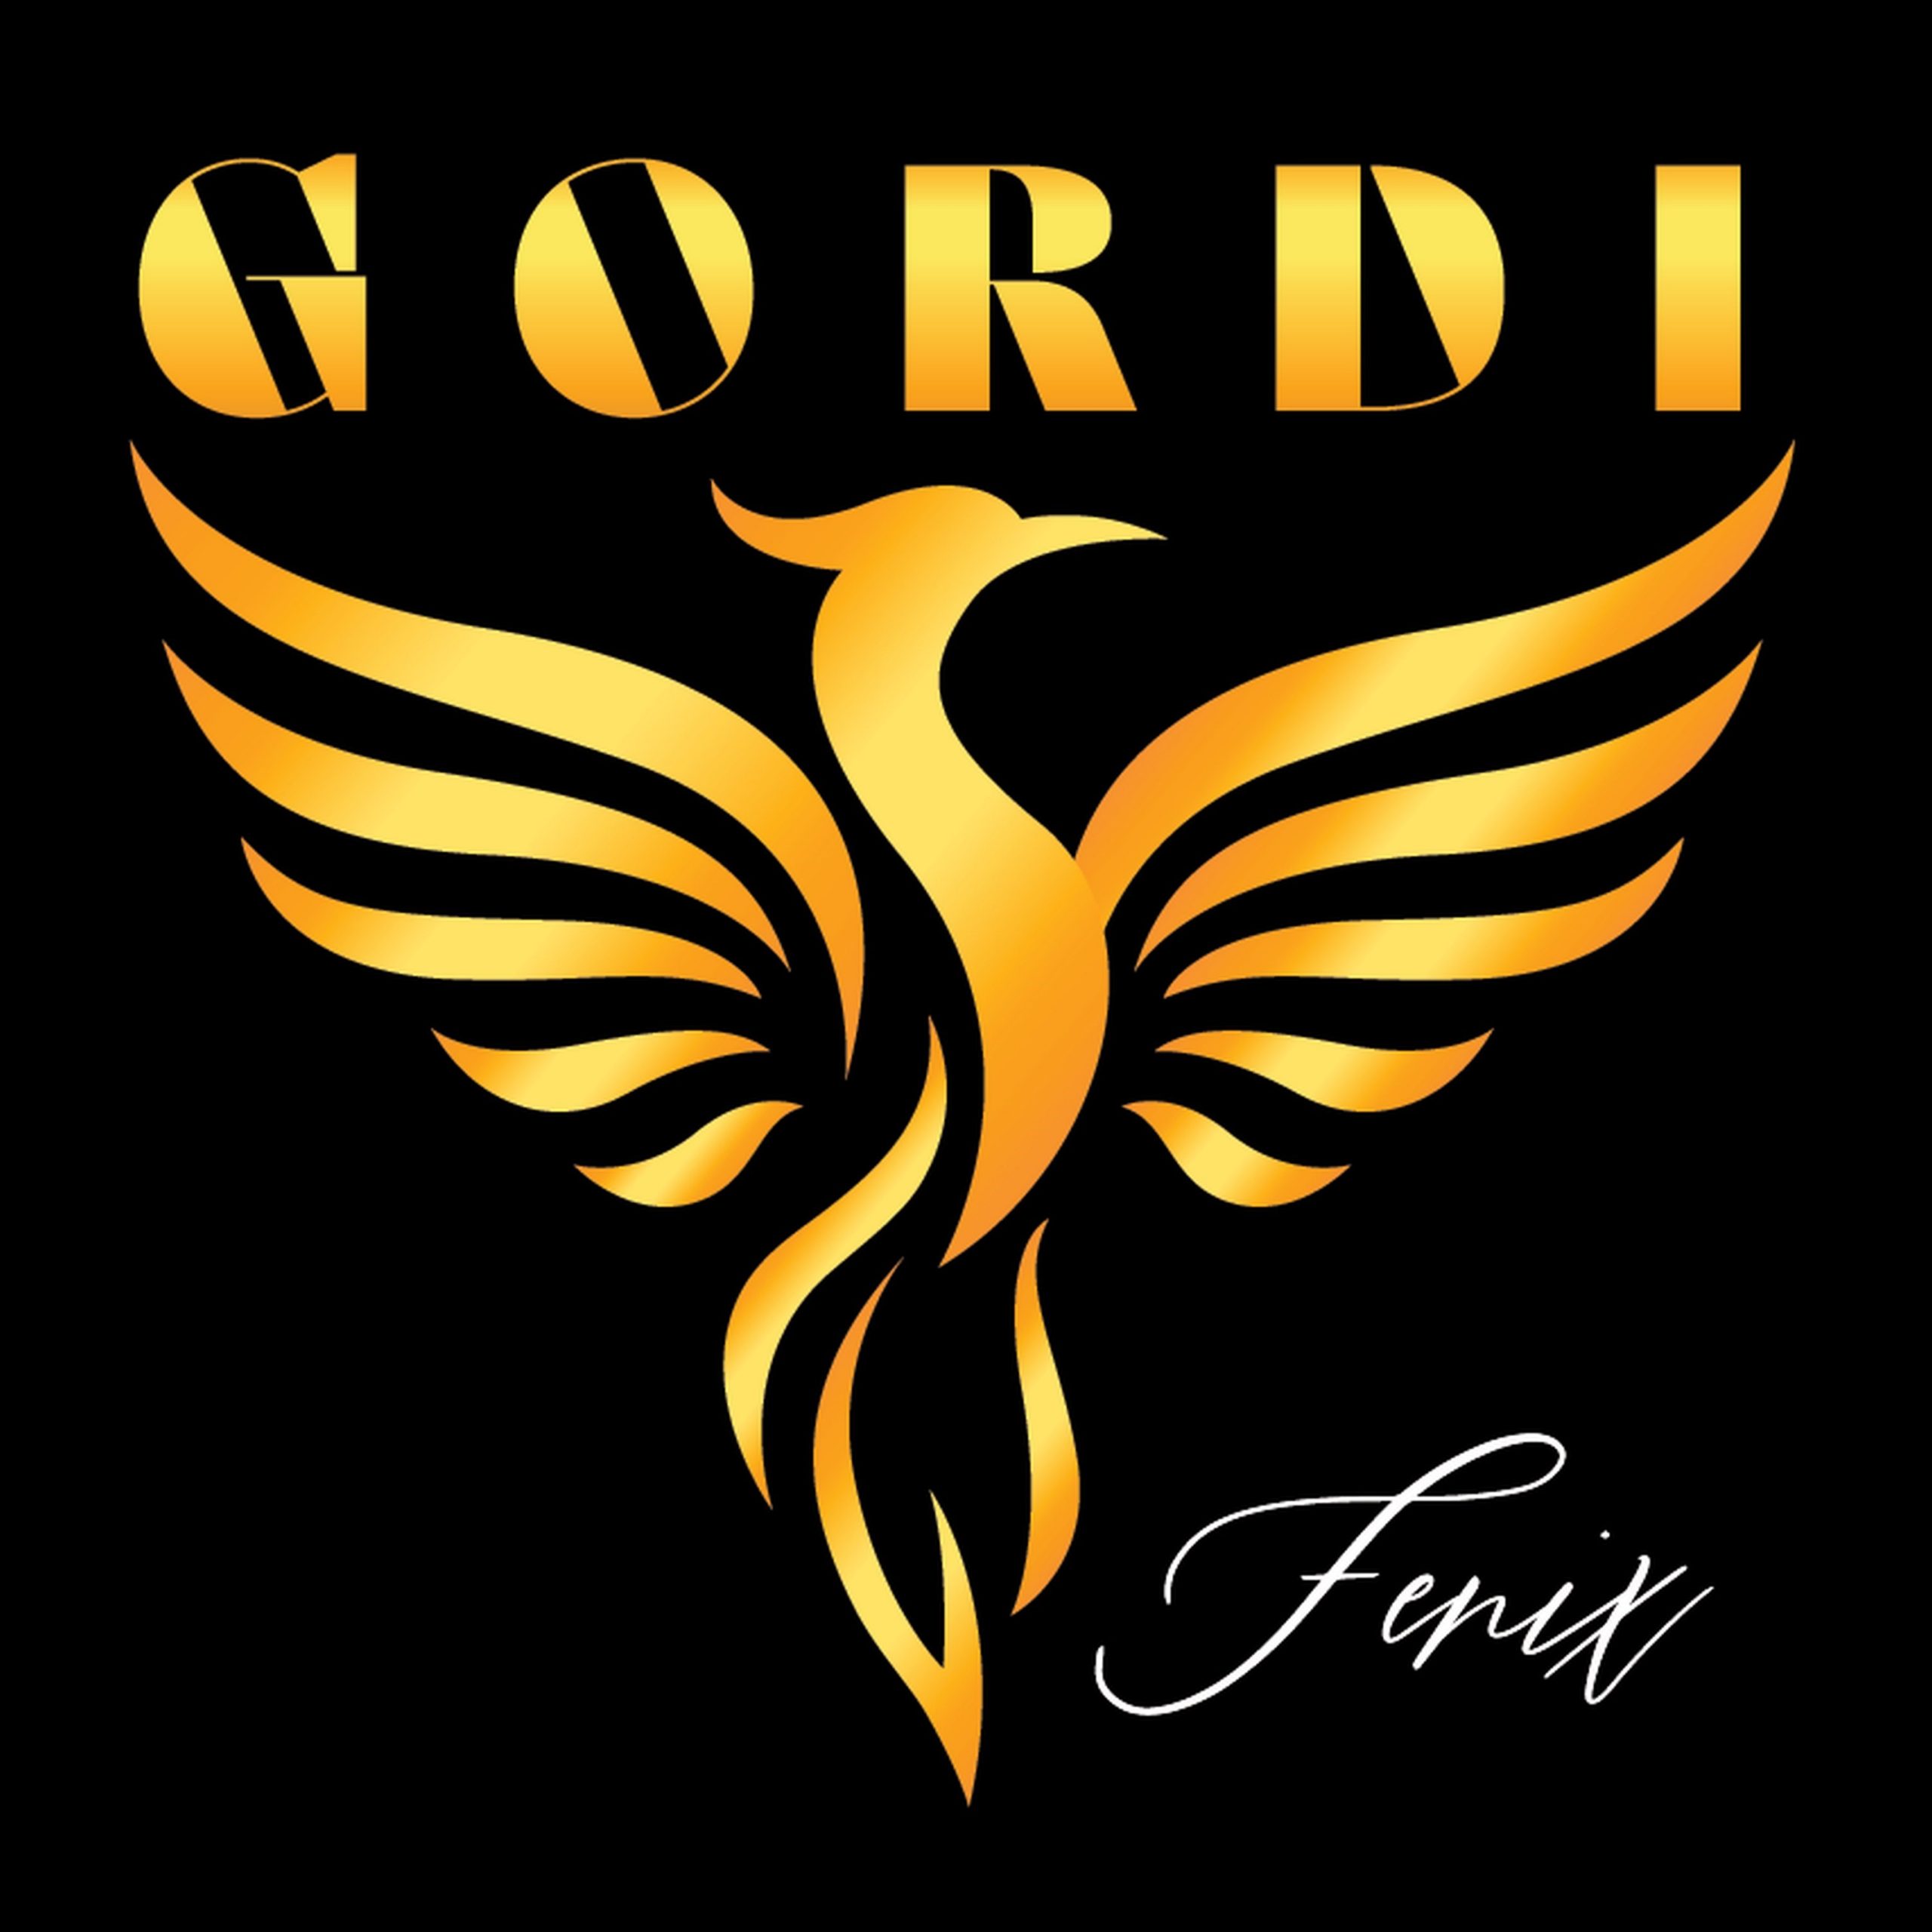 Gordi se vraćaju s novim albumom “Fenix”